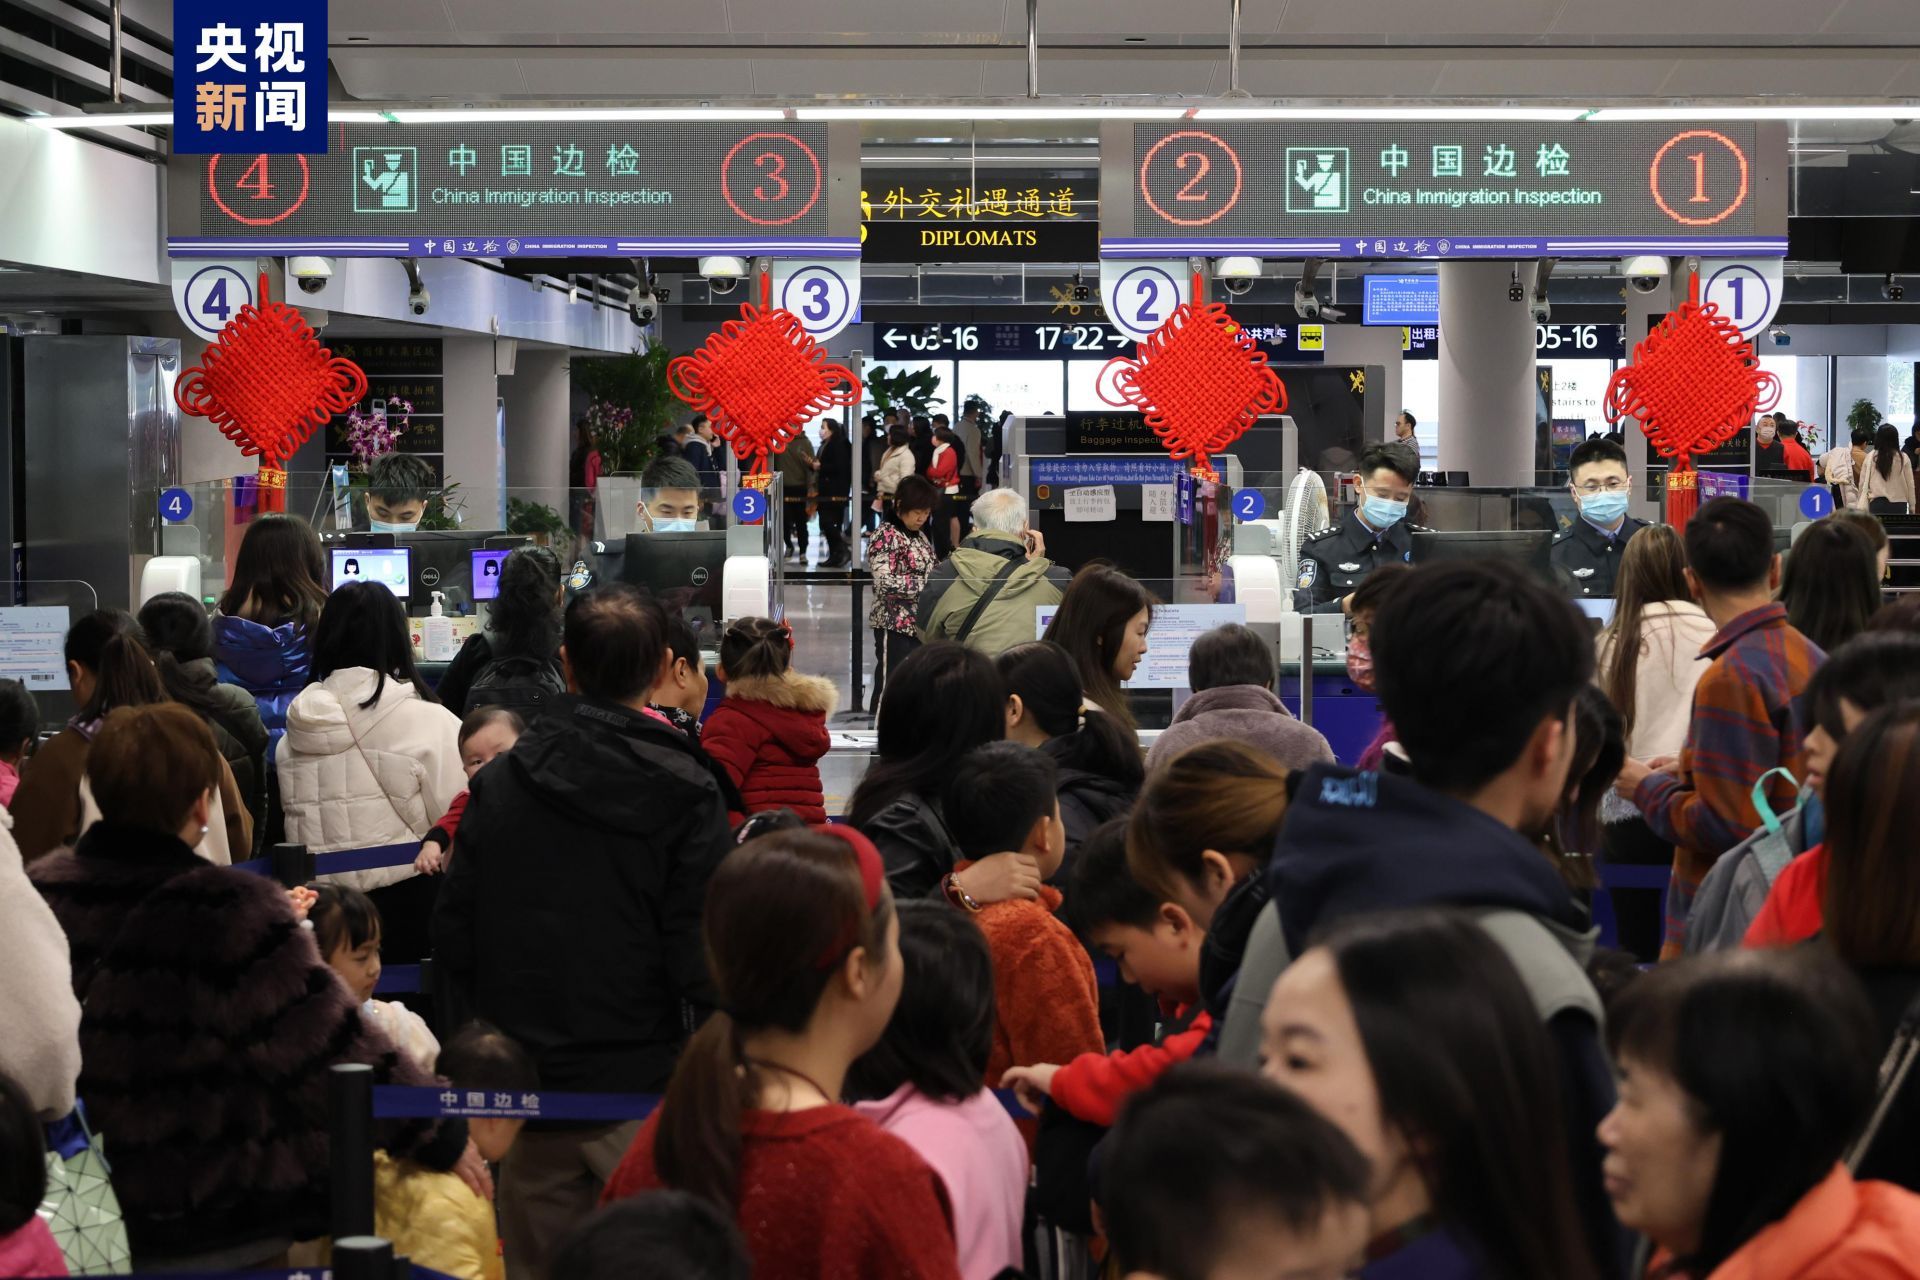 春节假期访港旅客初步估计约75万人次